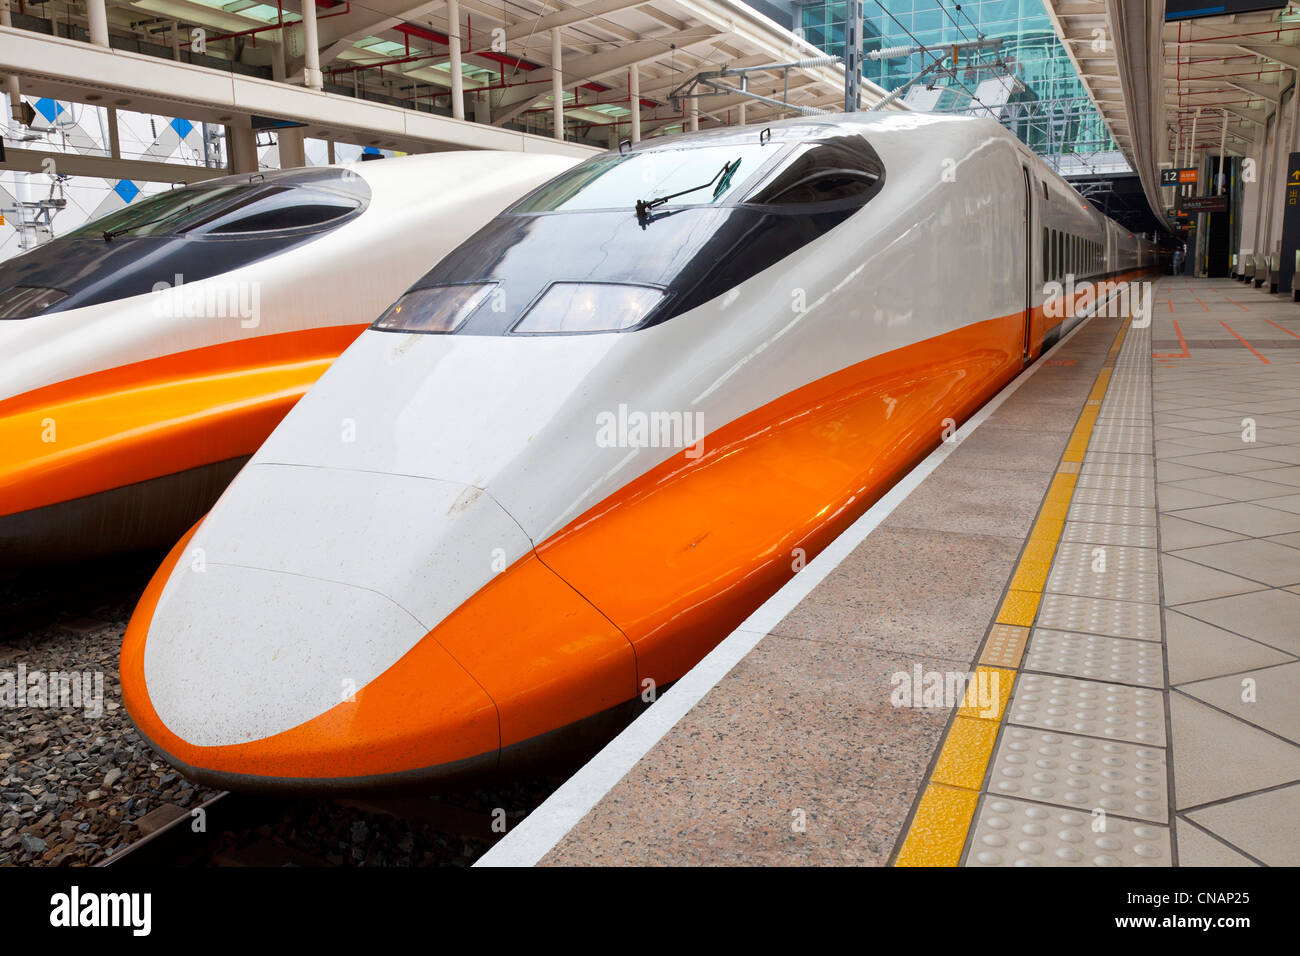 Taiwan High Speed Rail (THSR or HSR) train at Zuoying near Kaohsiung, Taiwan. JMH5973 Stock Photo